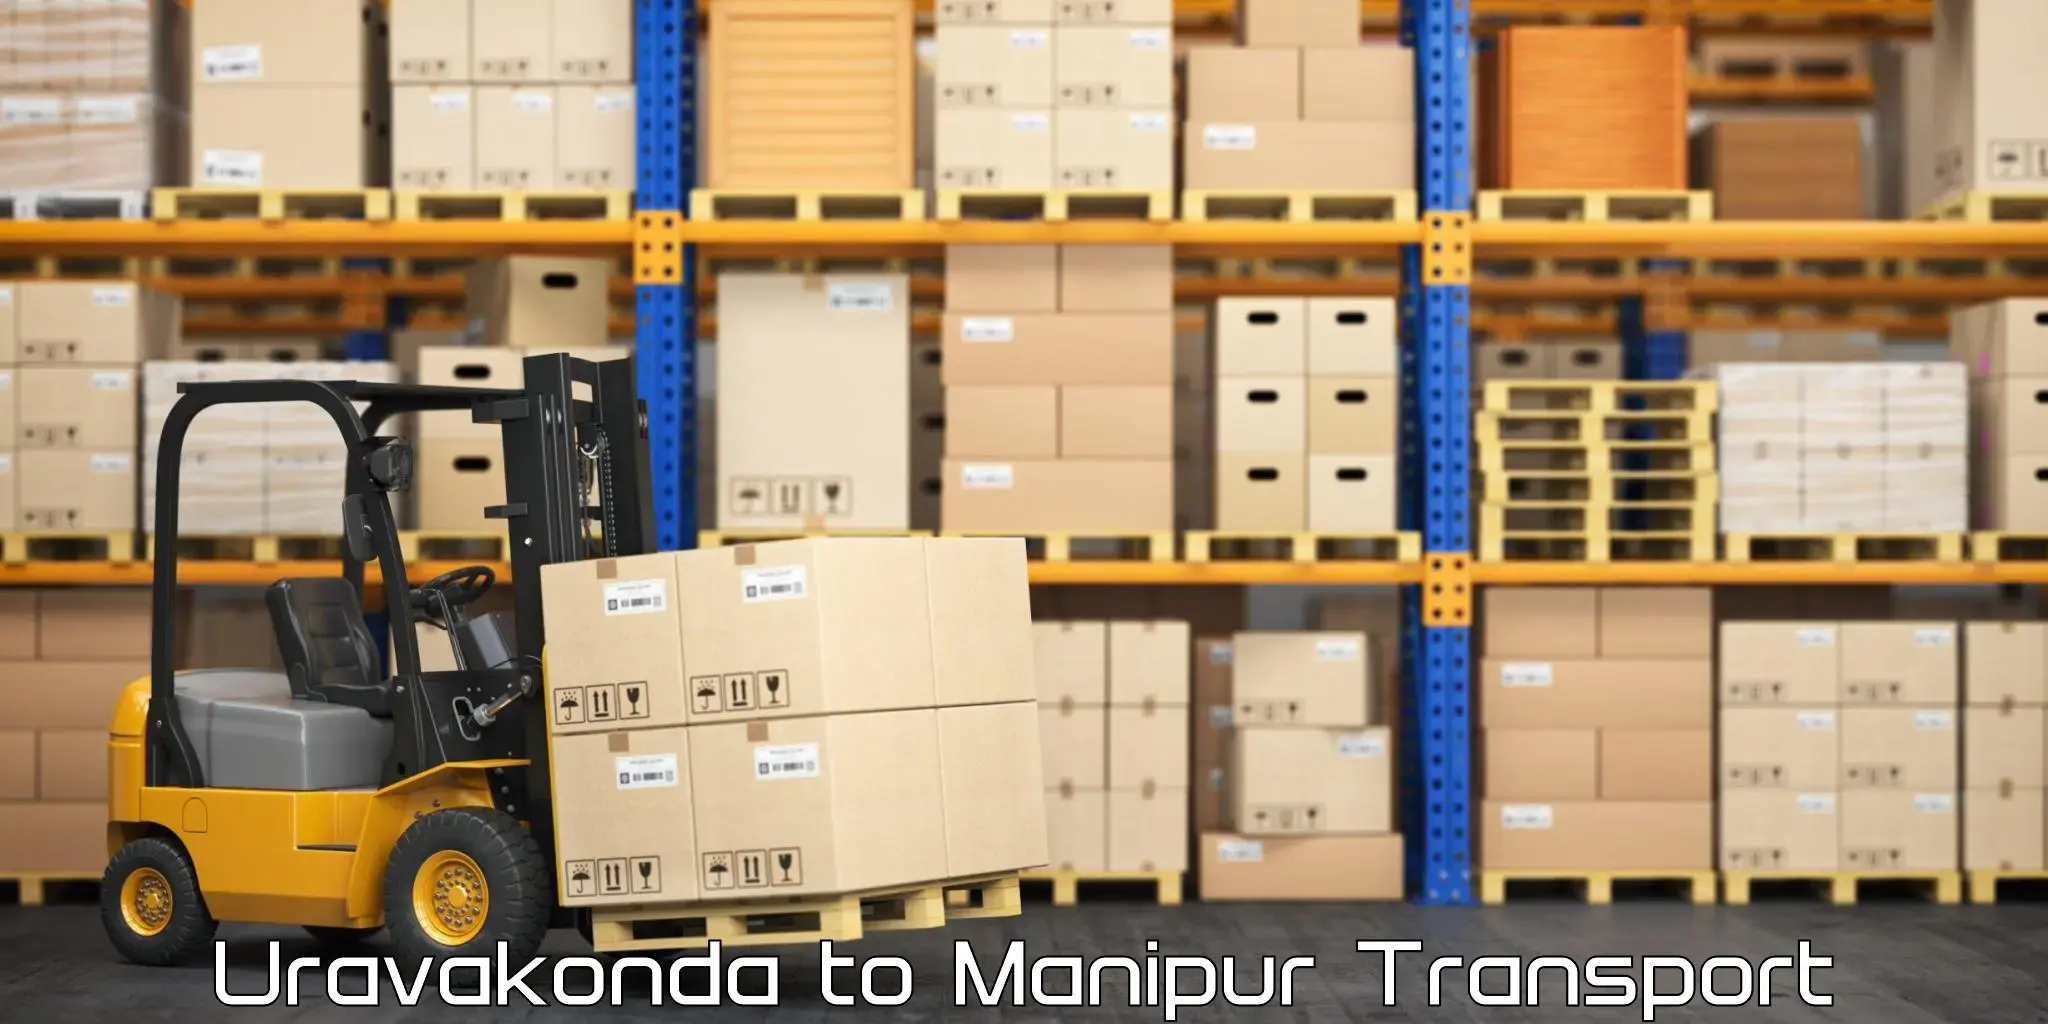 Container transport service Uravakonda to Tadubi